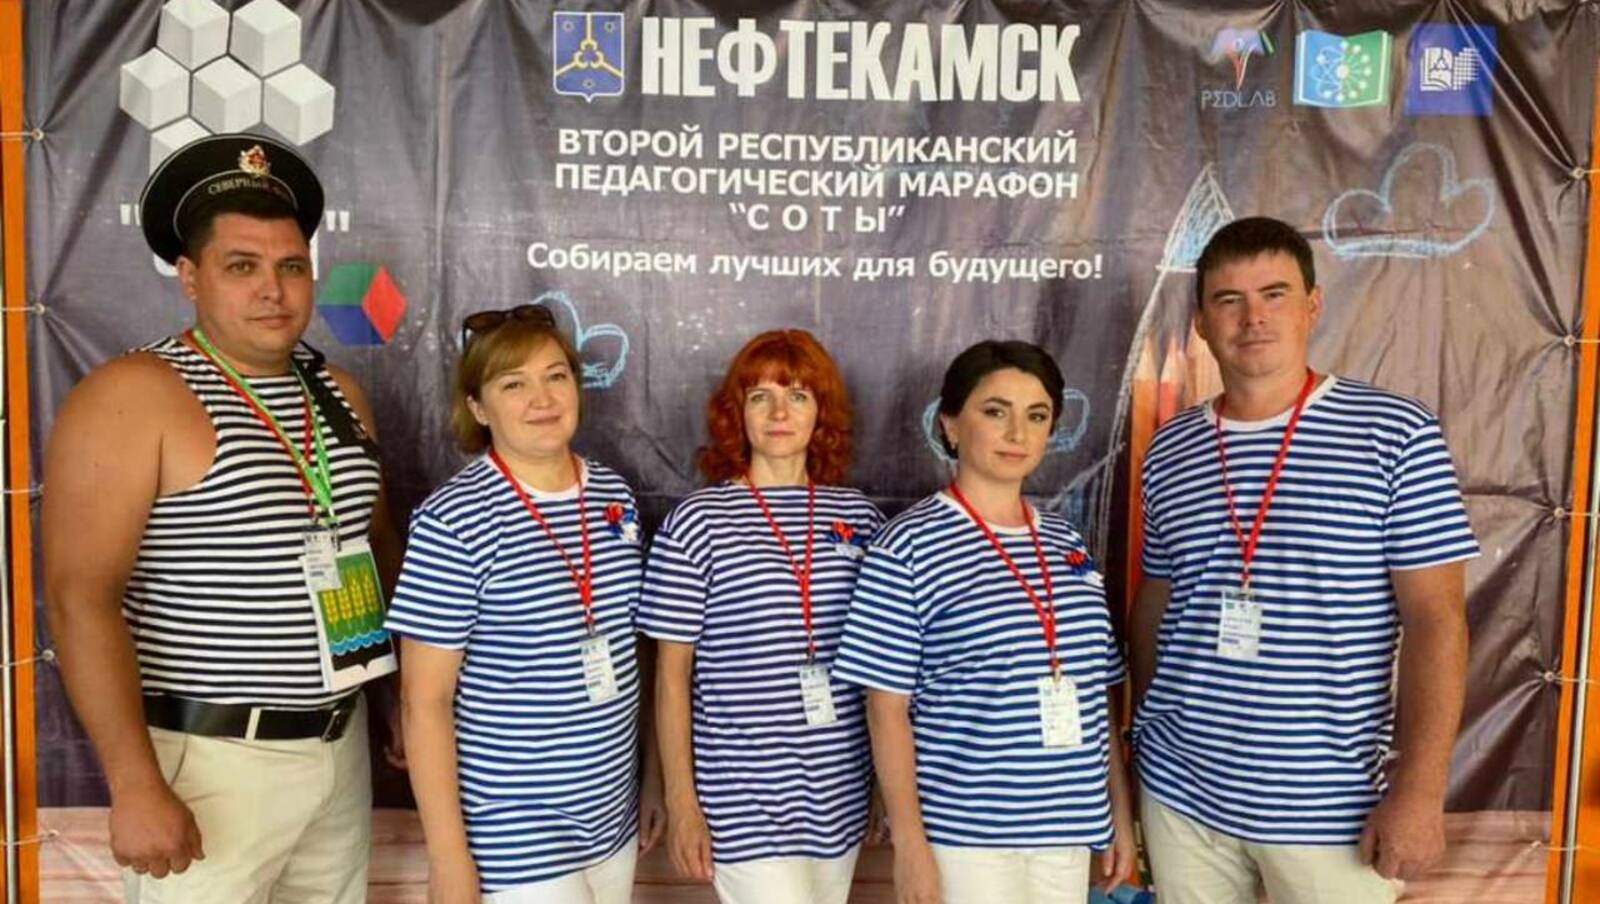 Дюртюлинские педагоги заняли 3 место на втором республиканском марафоне «СОТЫ»